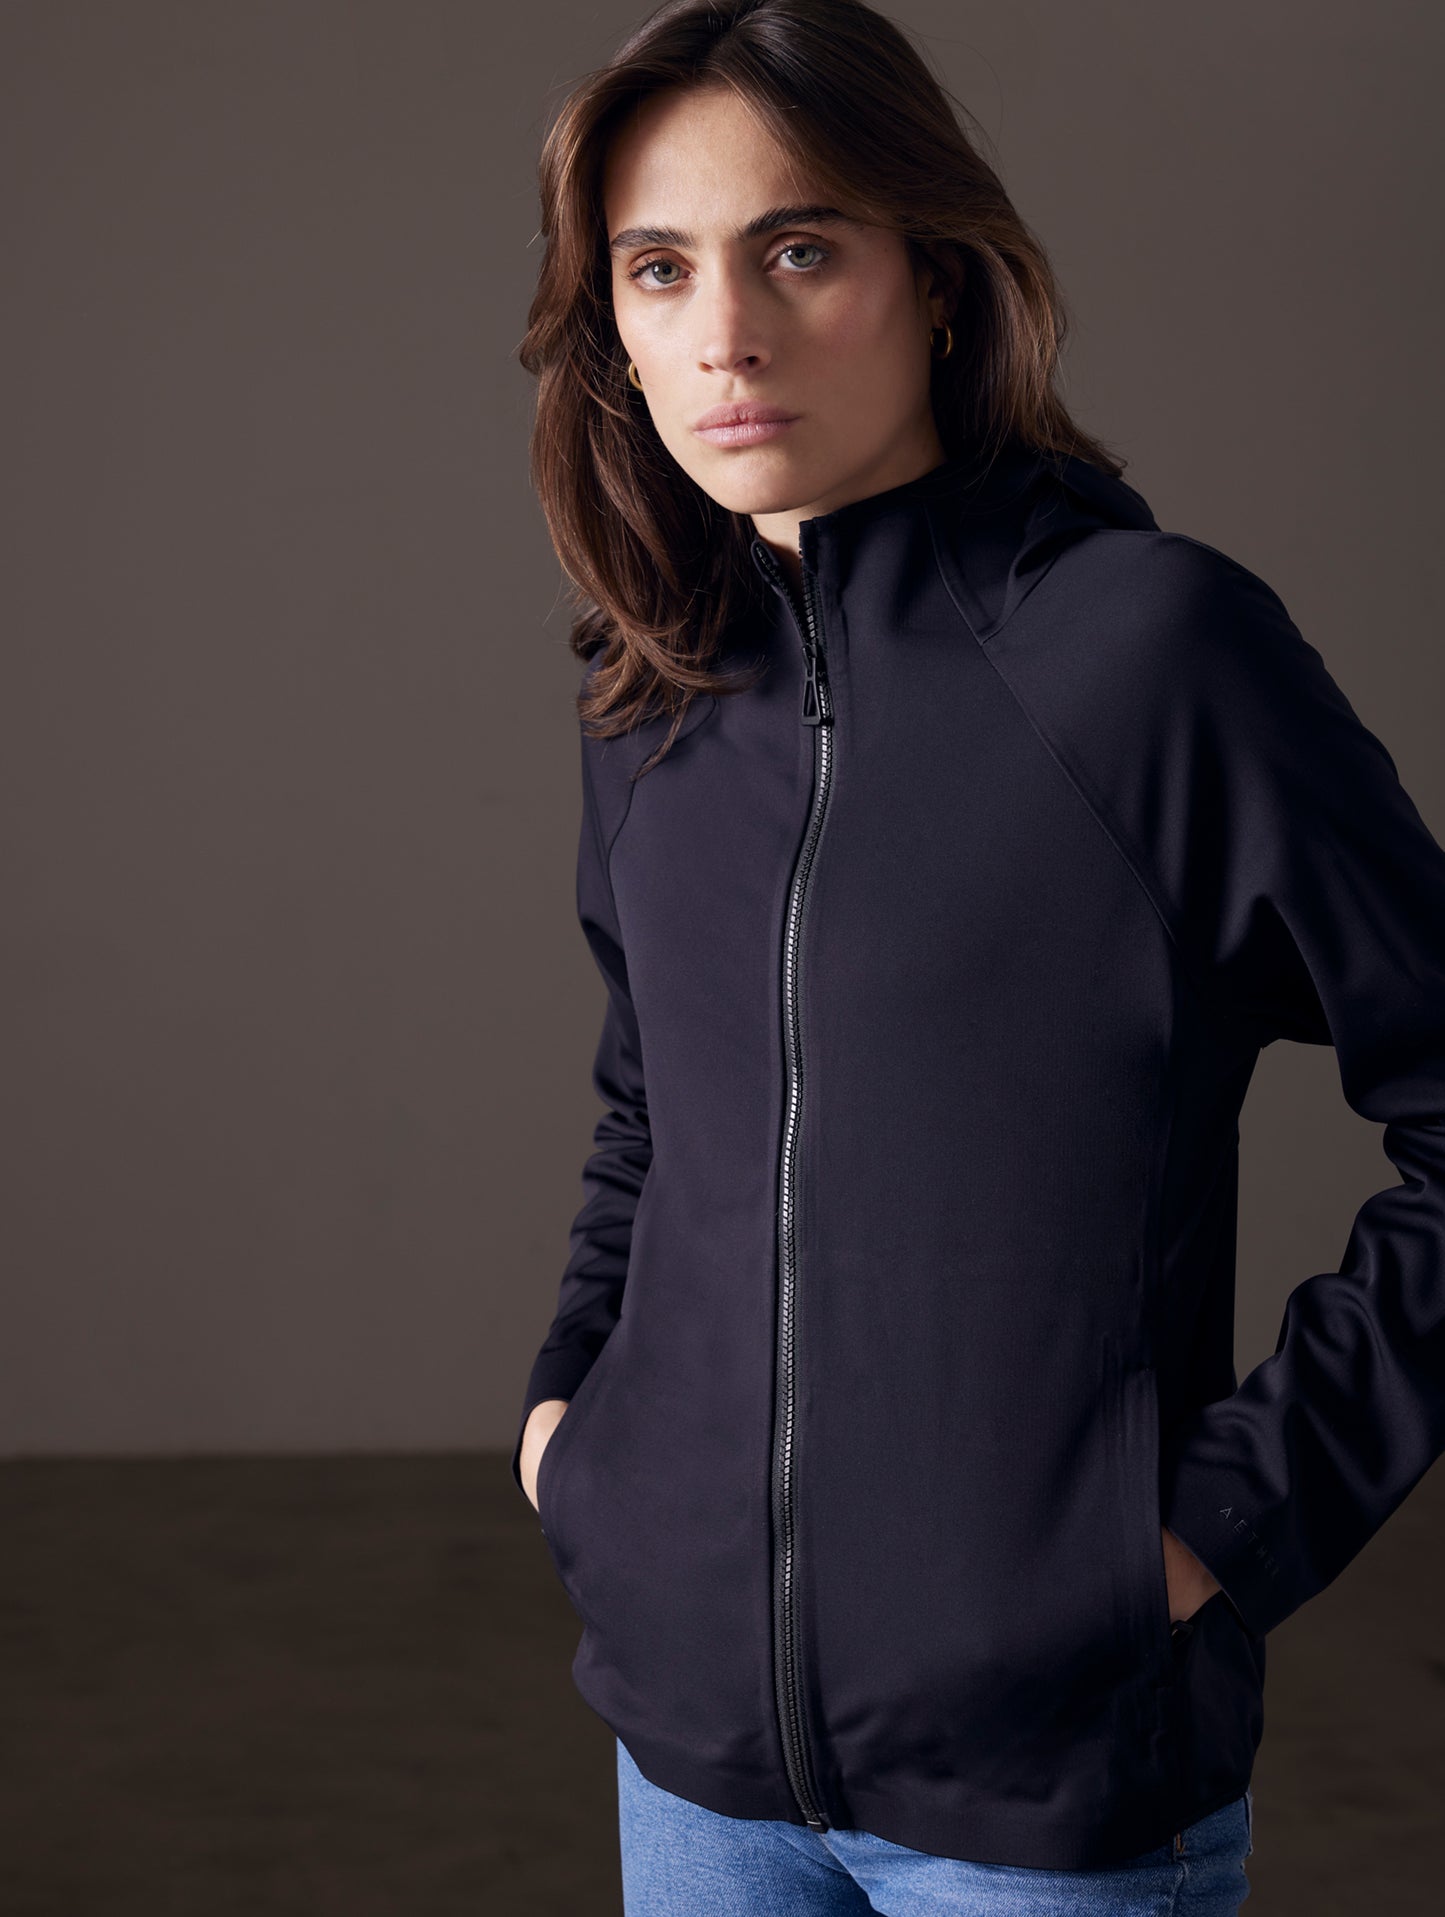 woman wearing black fleece jacket